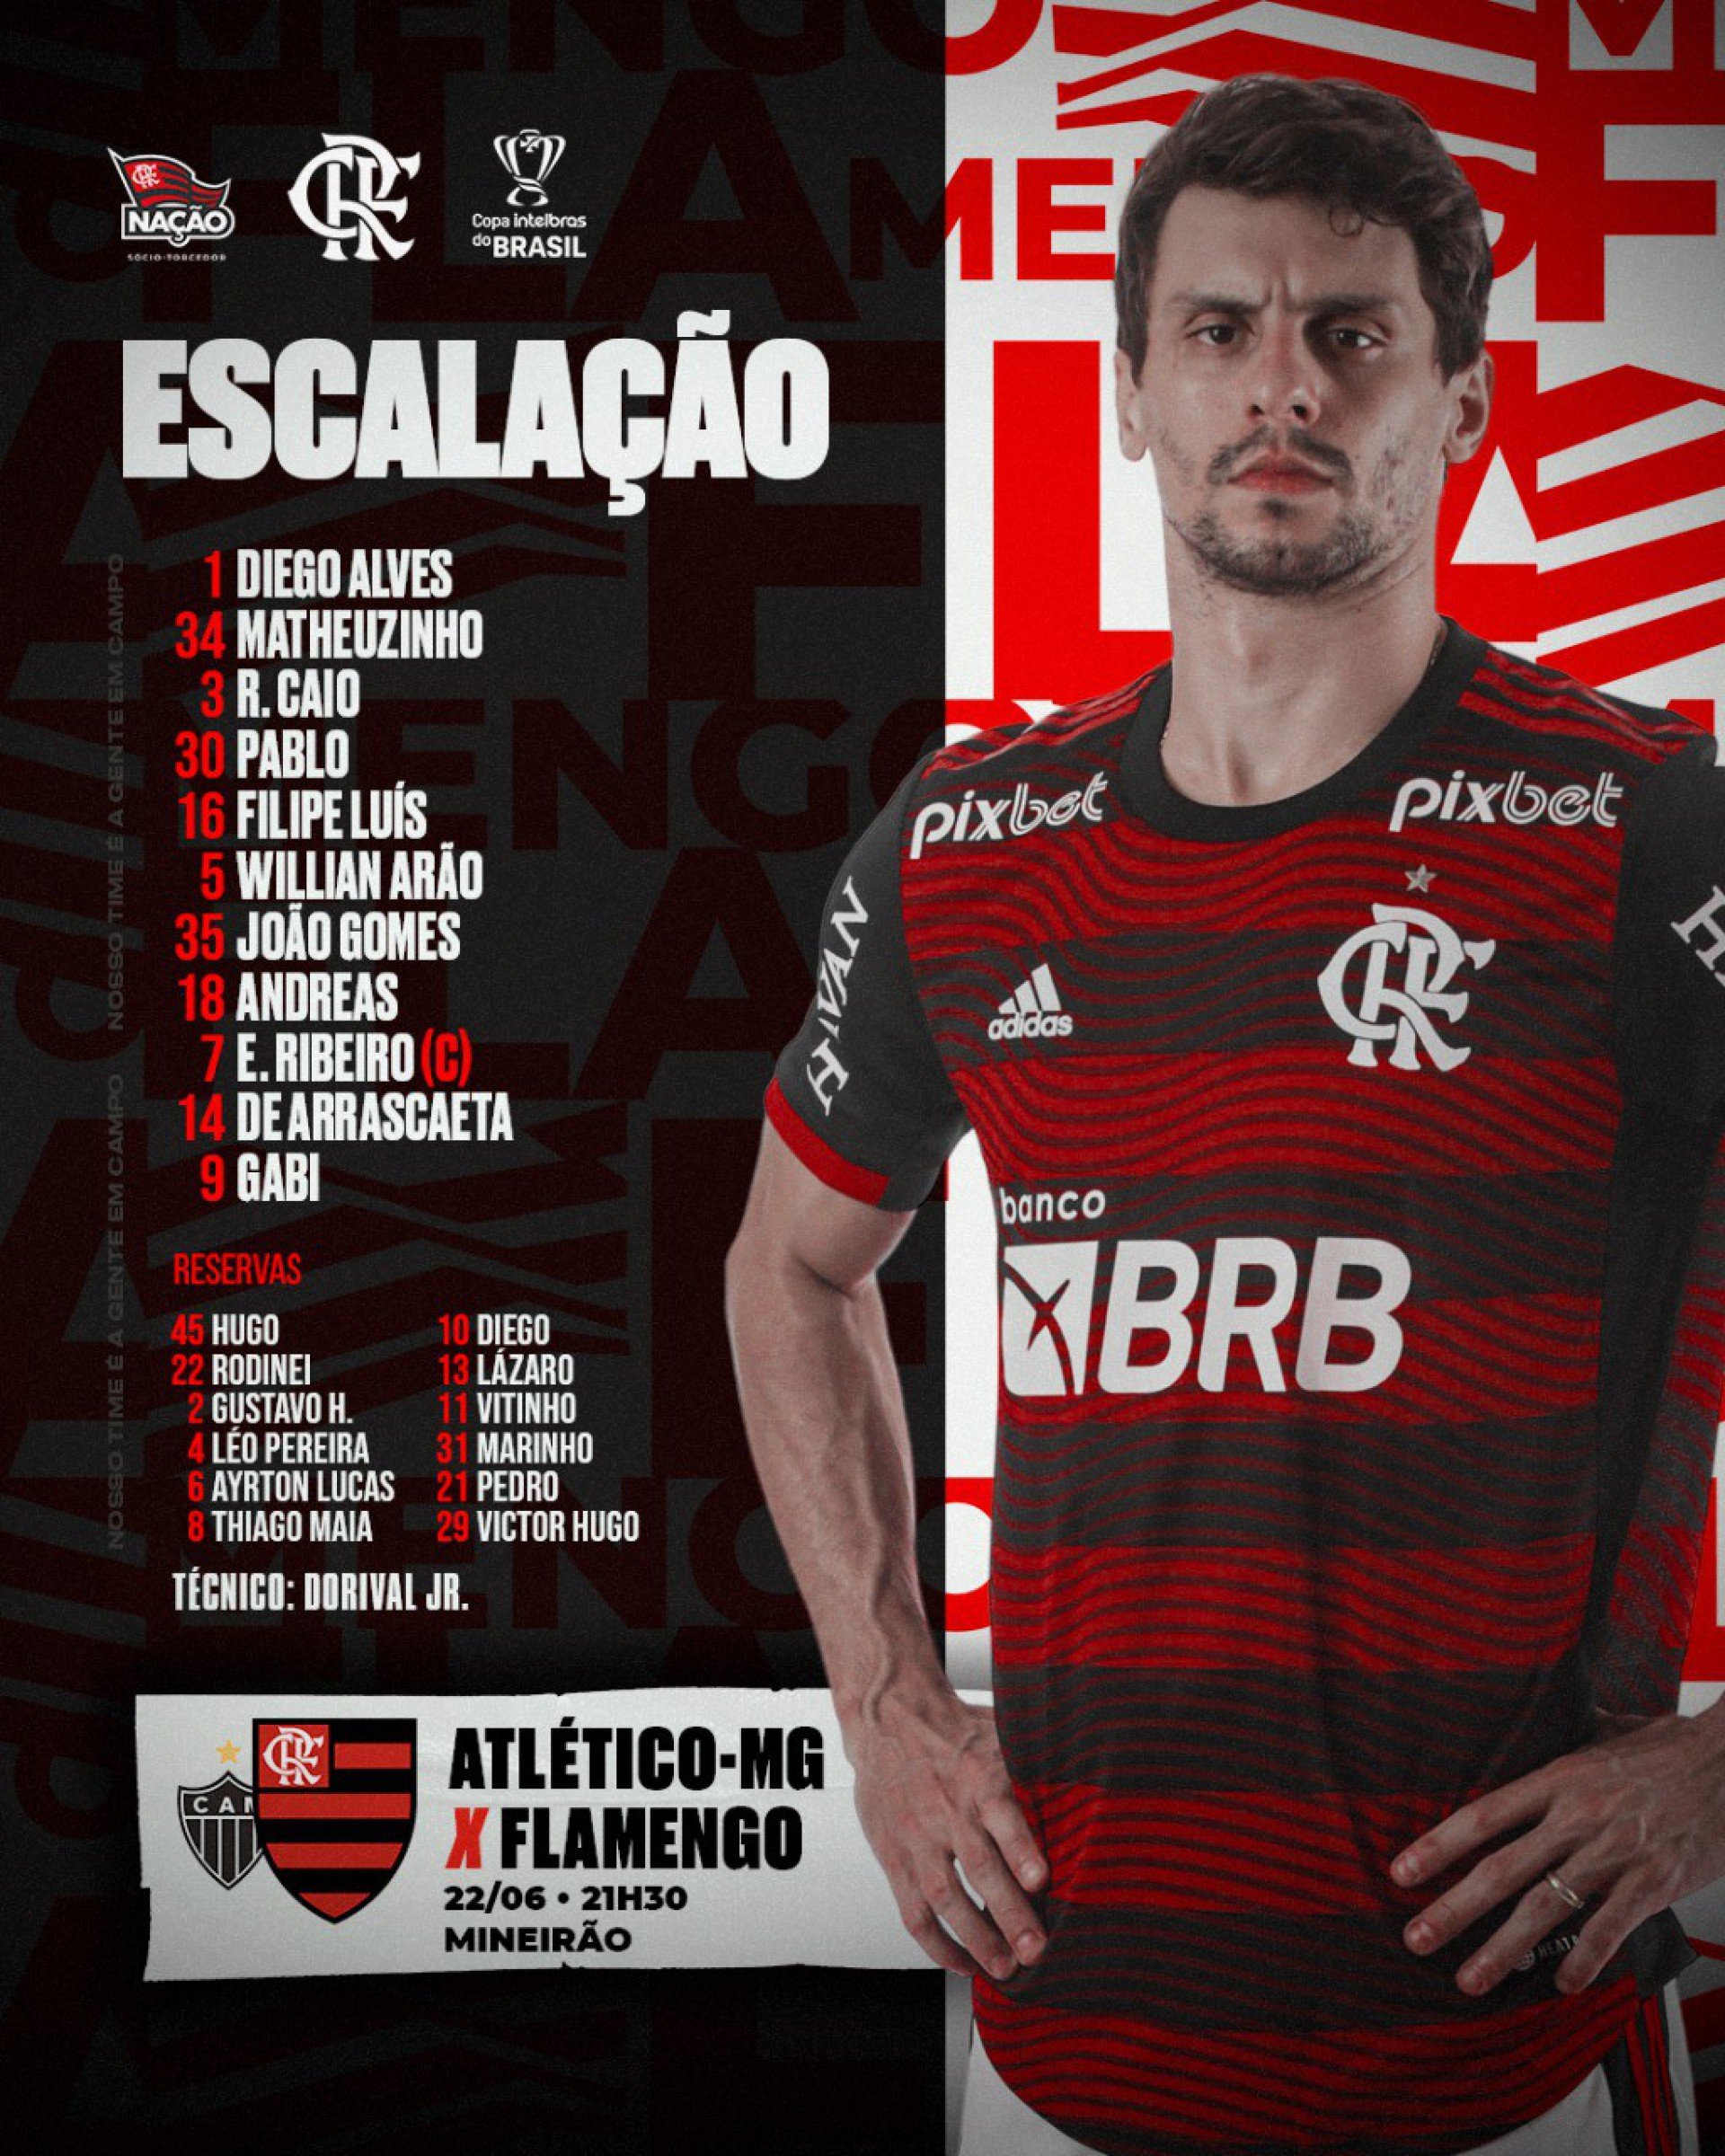 Escalação do Flamengo - Foto: Divulgação/Flamengo